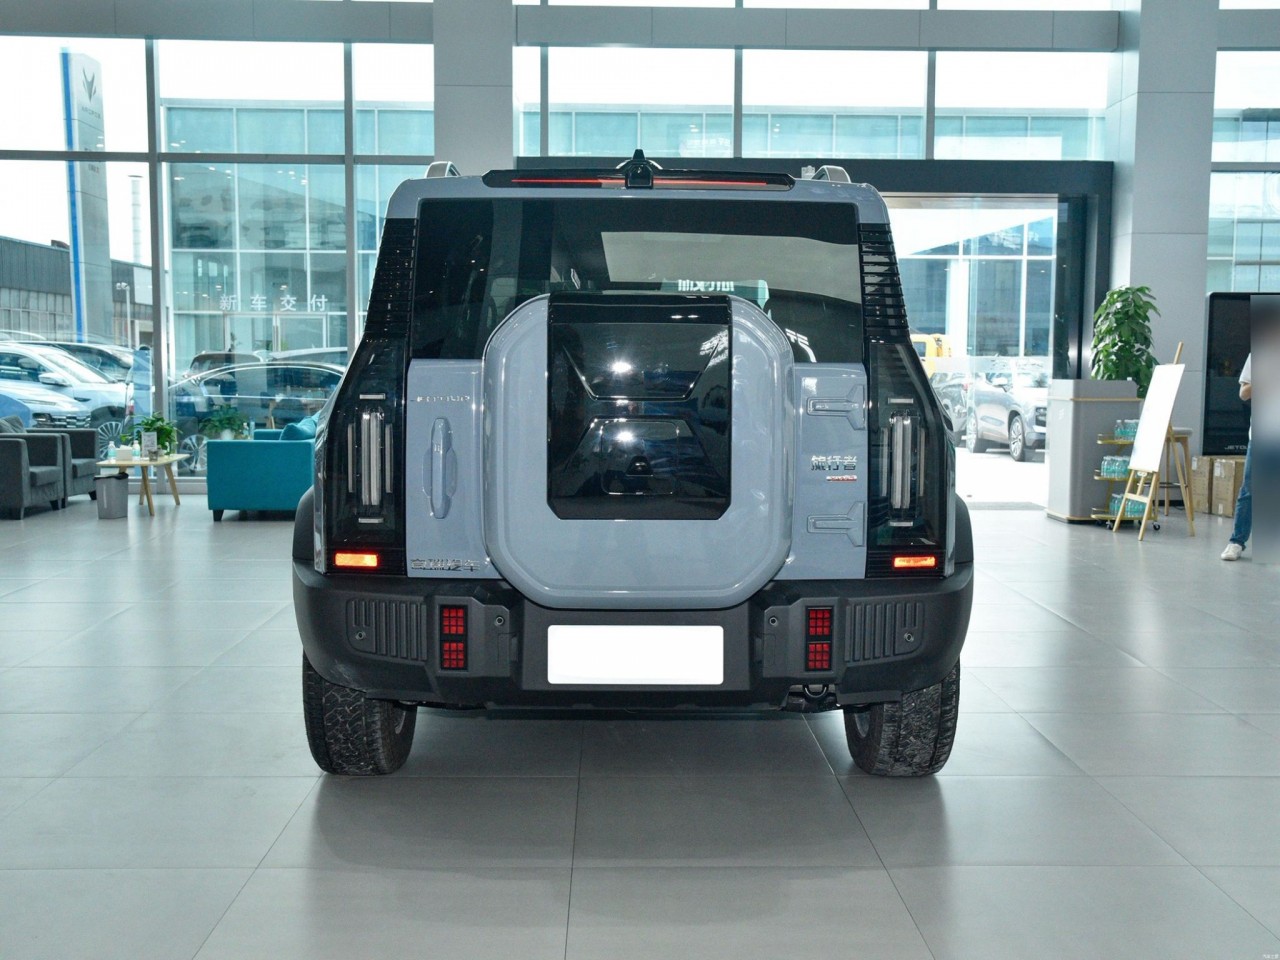 Jetour Traveller – SUV đến từ Trung Quốc có thiết kế giống Ford Bronco